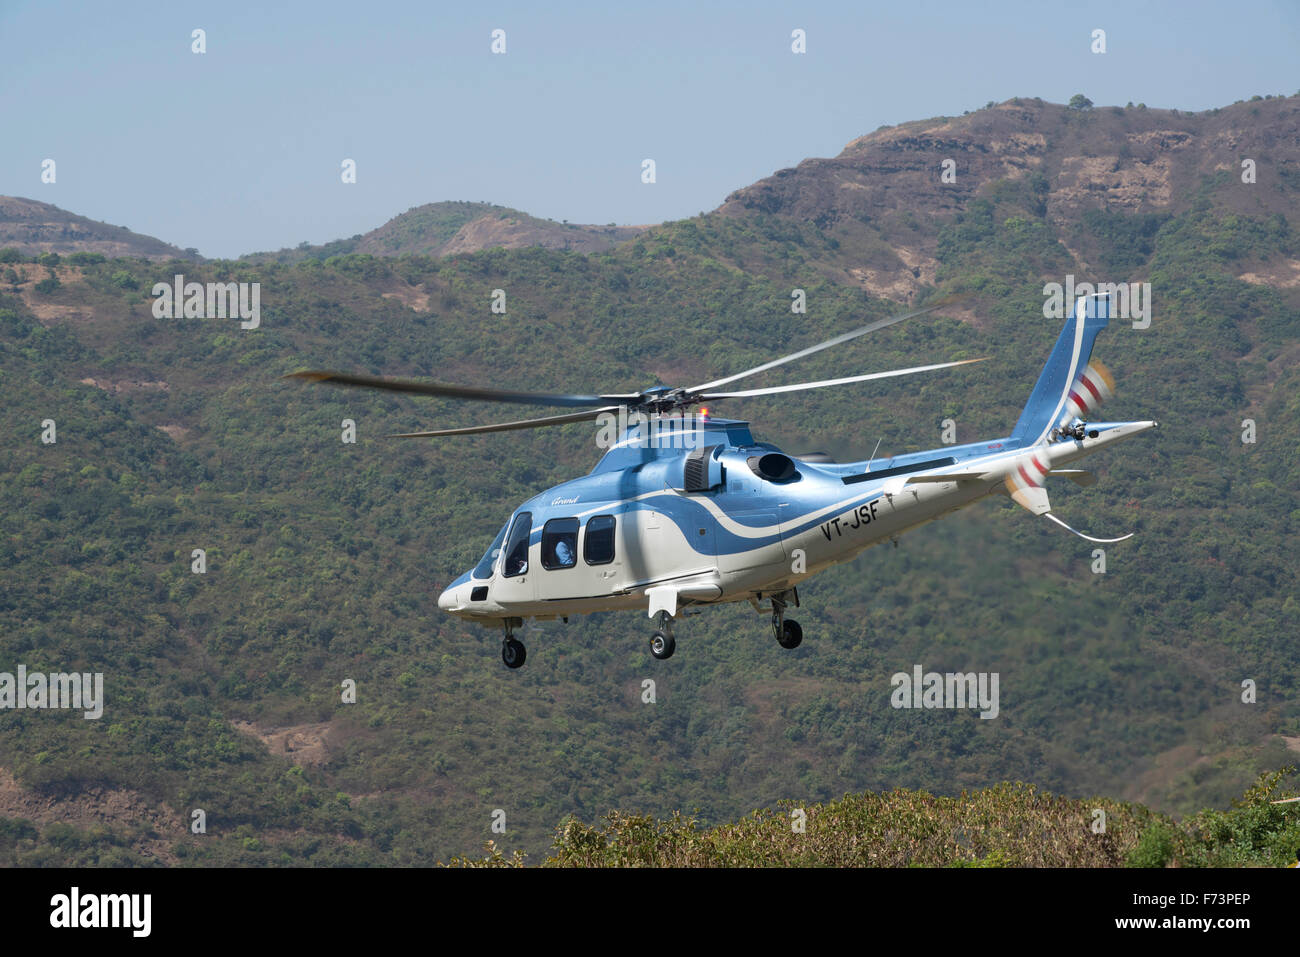 Helicopter flying, lavasa, pune, maharashtra, india, asia Stock Photo